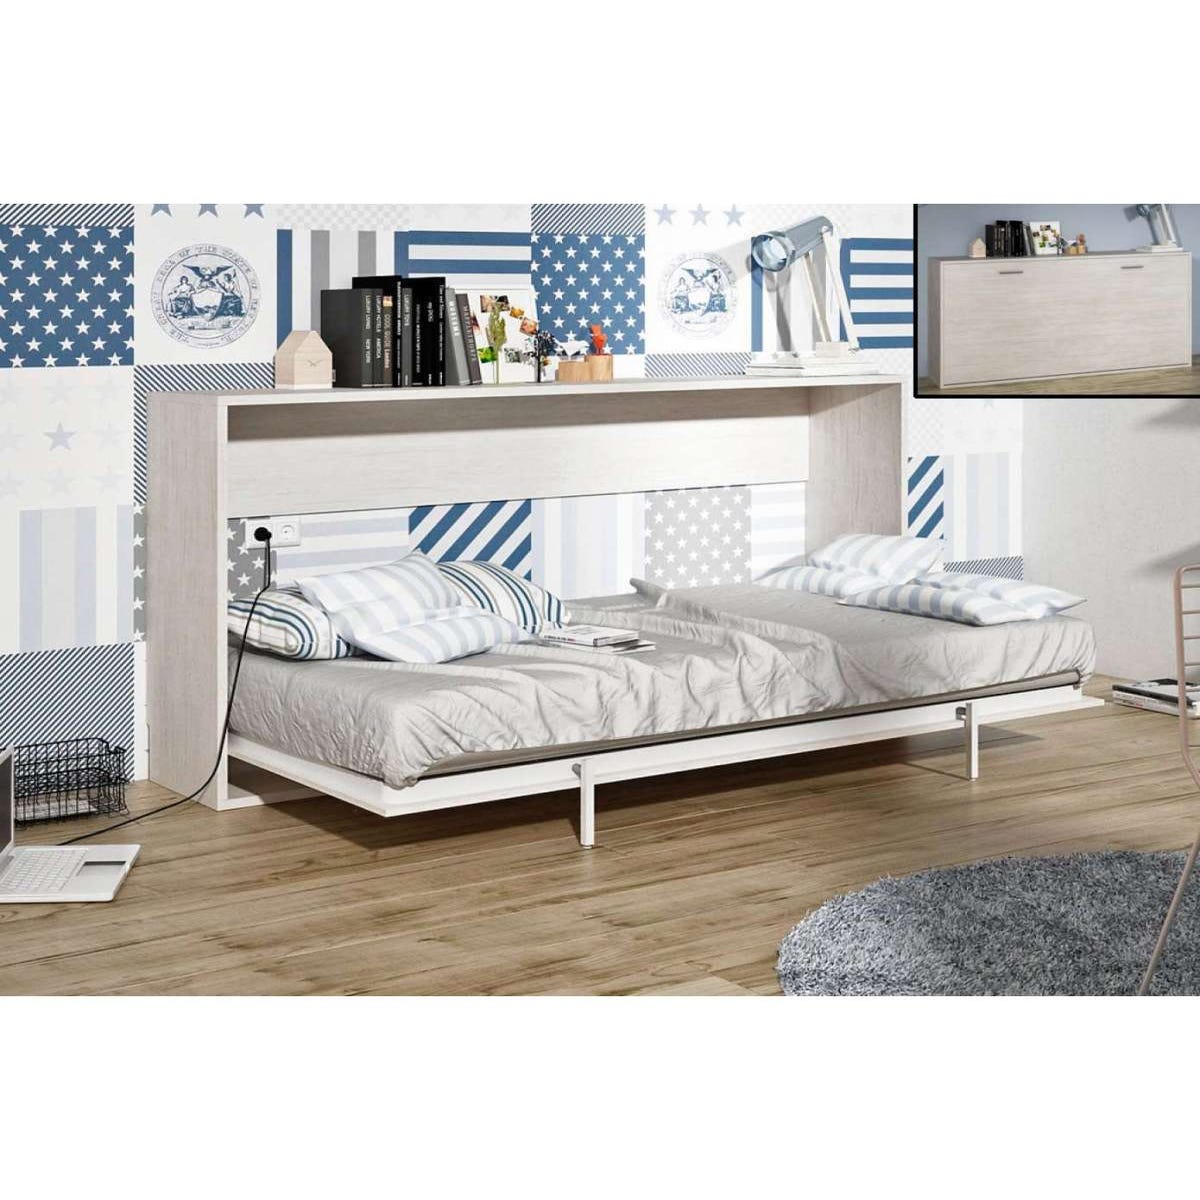 Cama abatible horizontal de 90 Medidas cama abatible Para colchón